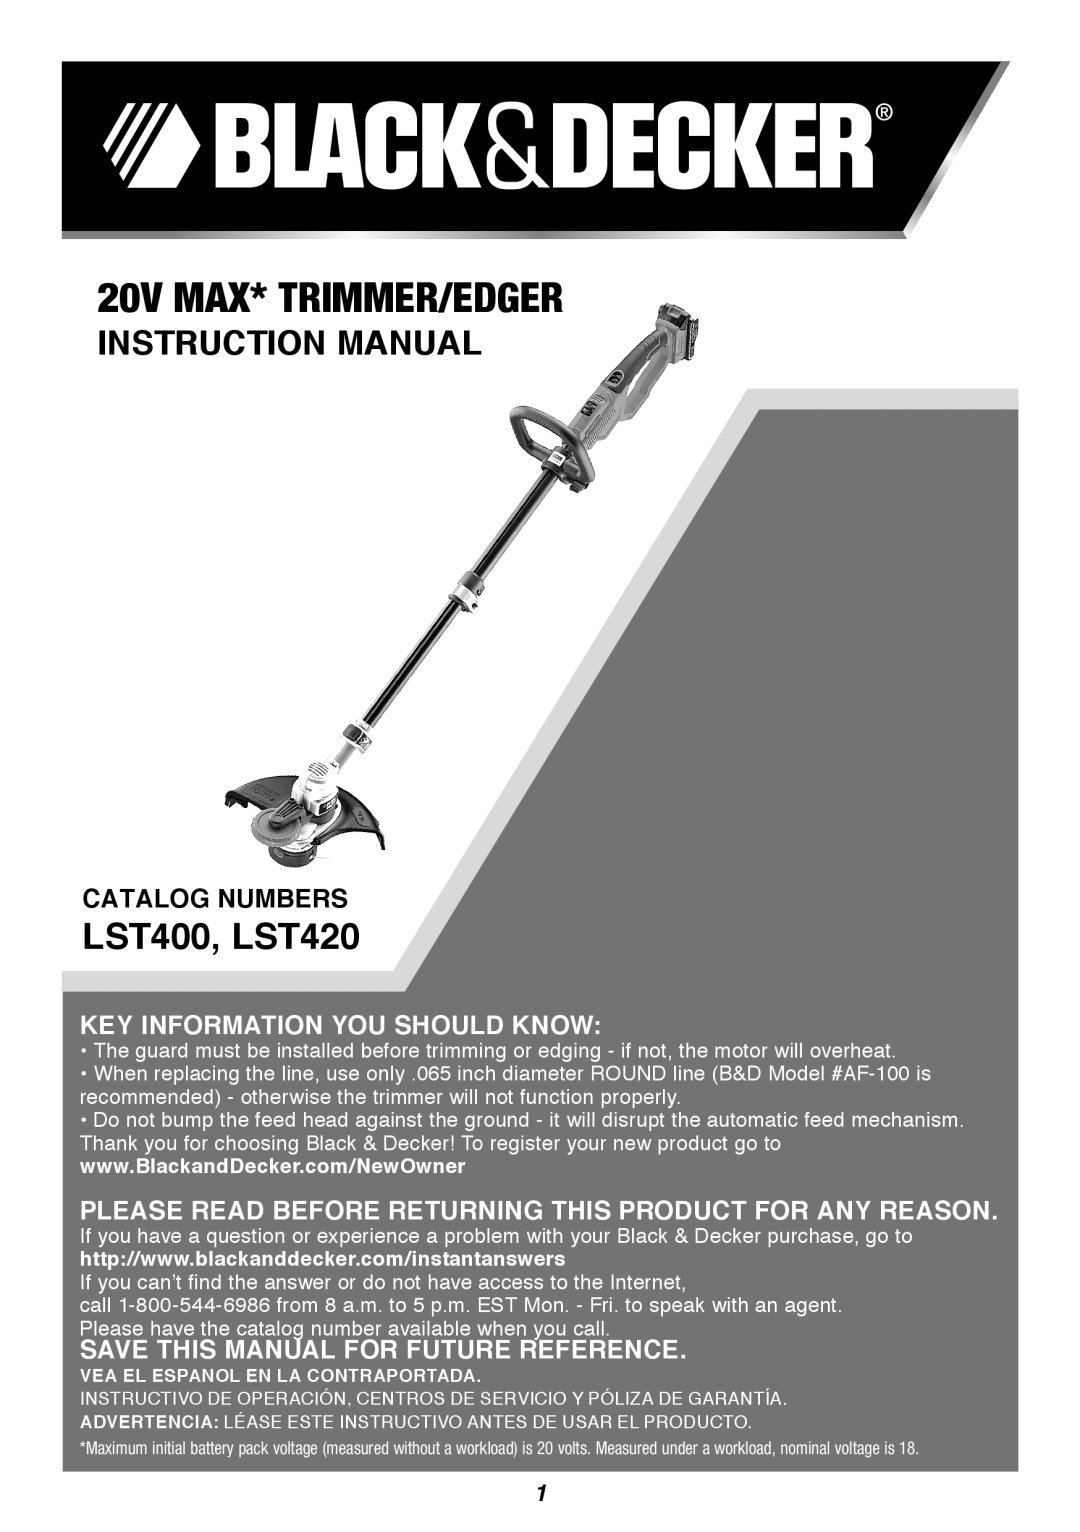 Black & Decker instruction manual 20V max* Trimmer/Edger, LST400, LST420, Catalog Numbers 